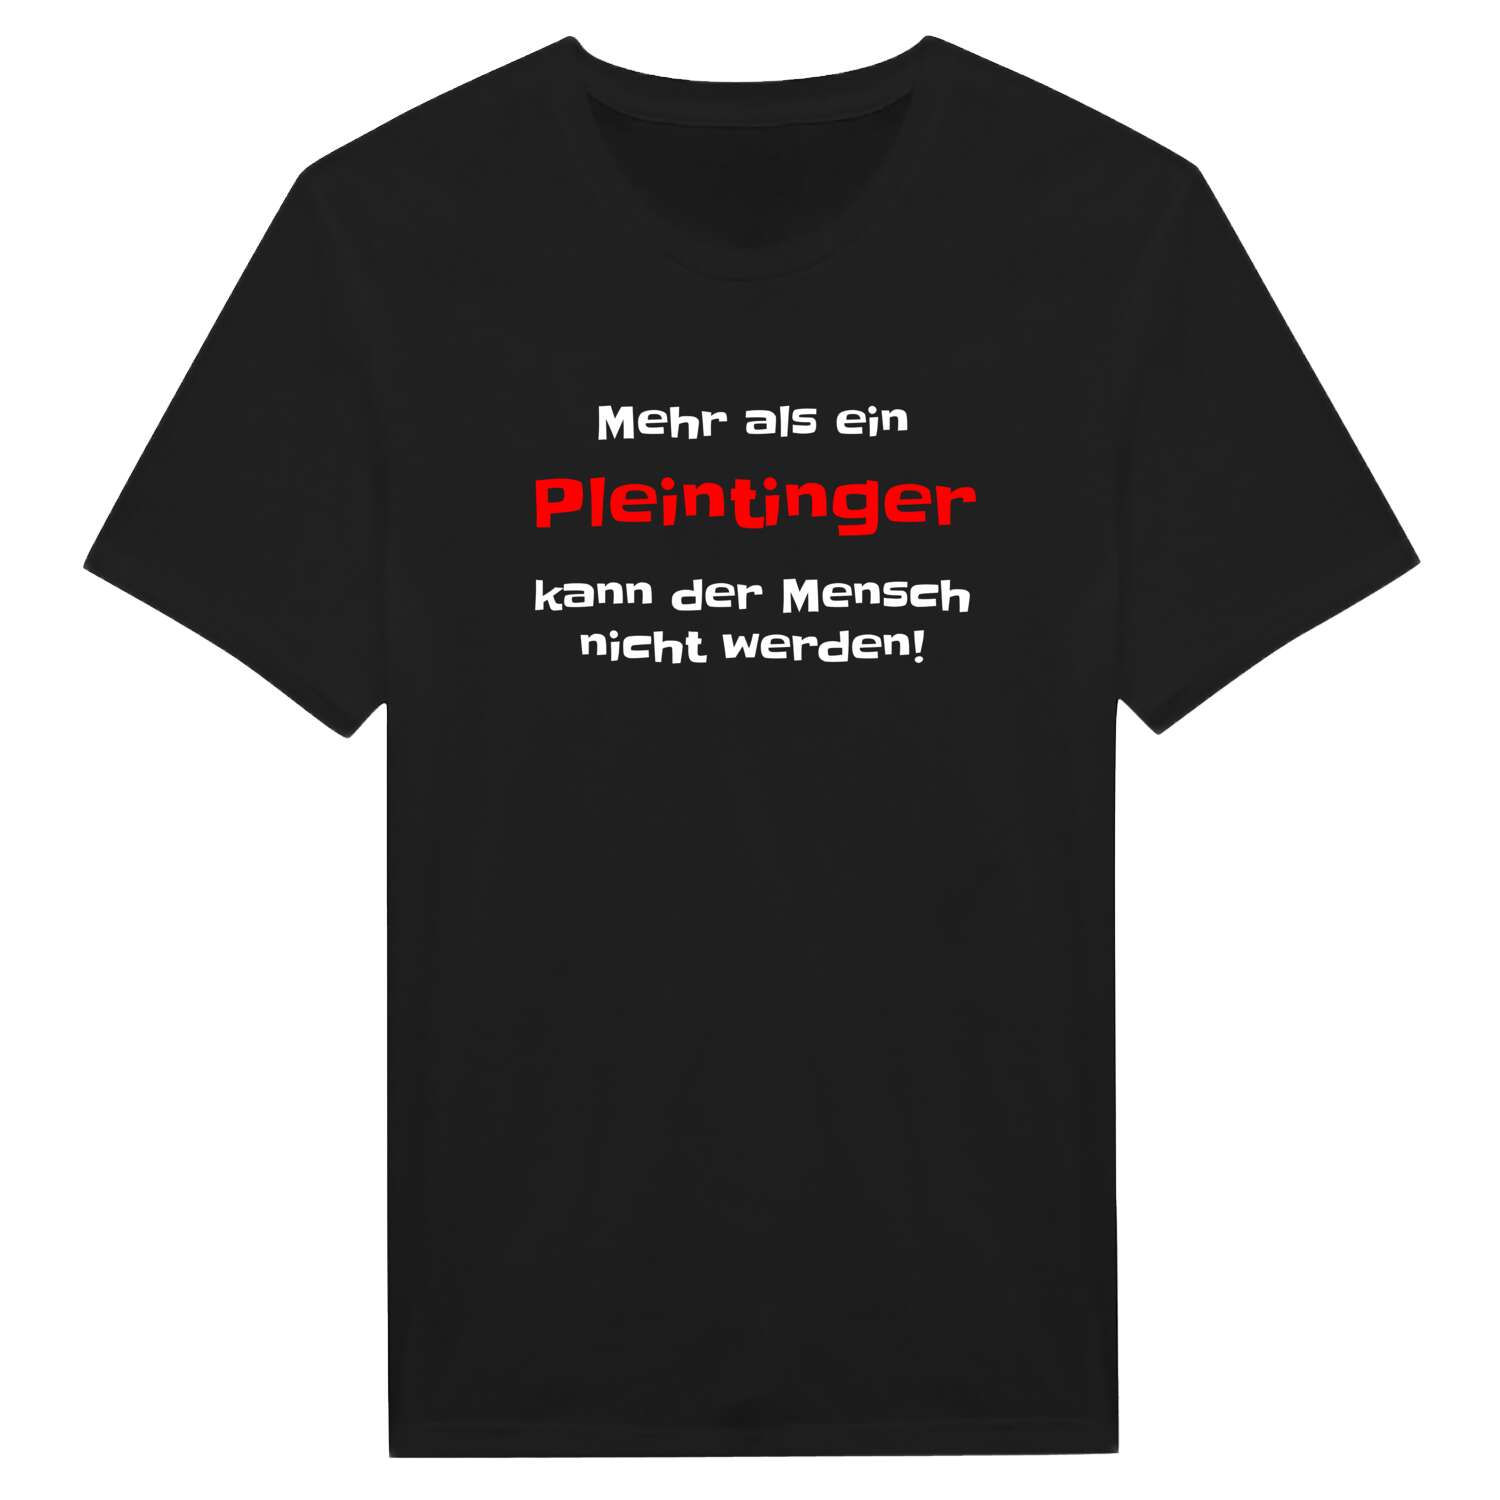 Pleinting T-Shirt »Mehr als ein«